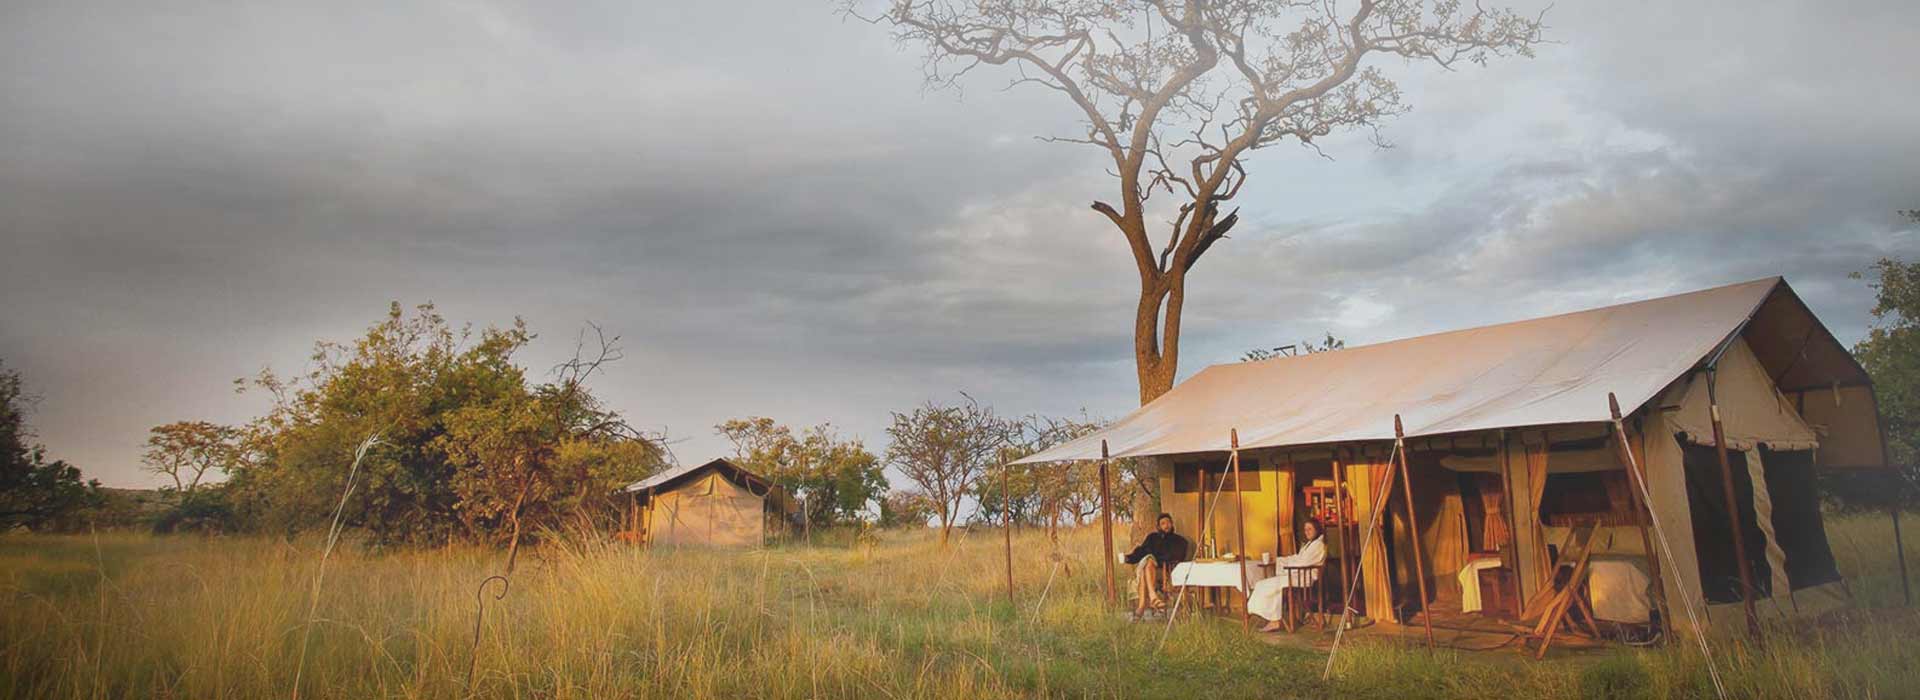 Tanzania Budget Camping Safari from Mwanza to Serengeti   